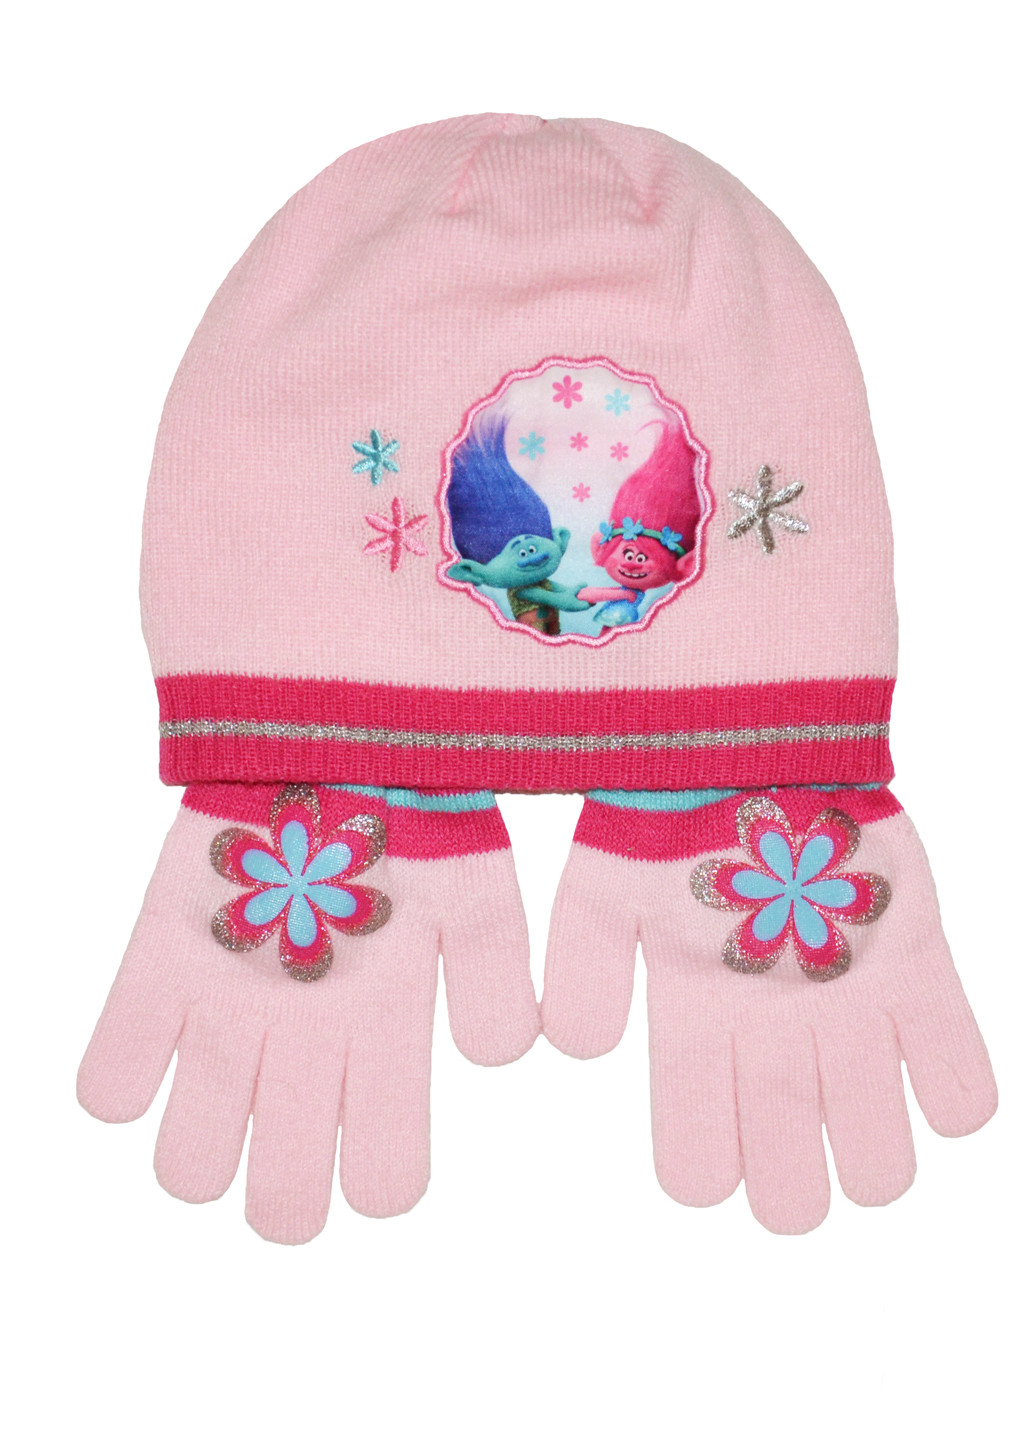 Комплект (шапка, перчатки) Disney шапка + перчатки персонажи розовые кэжуалы акрил